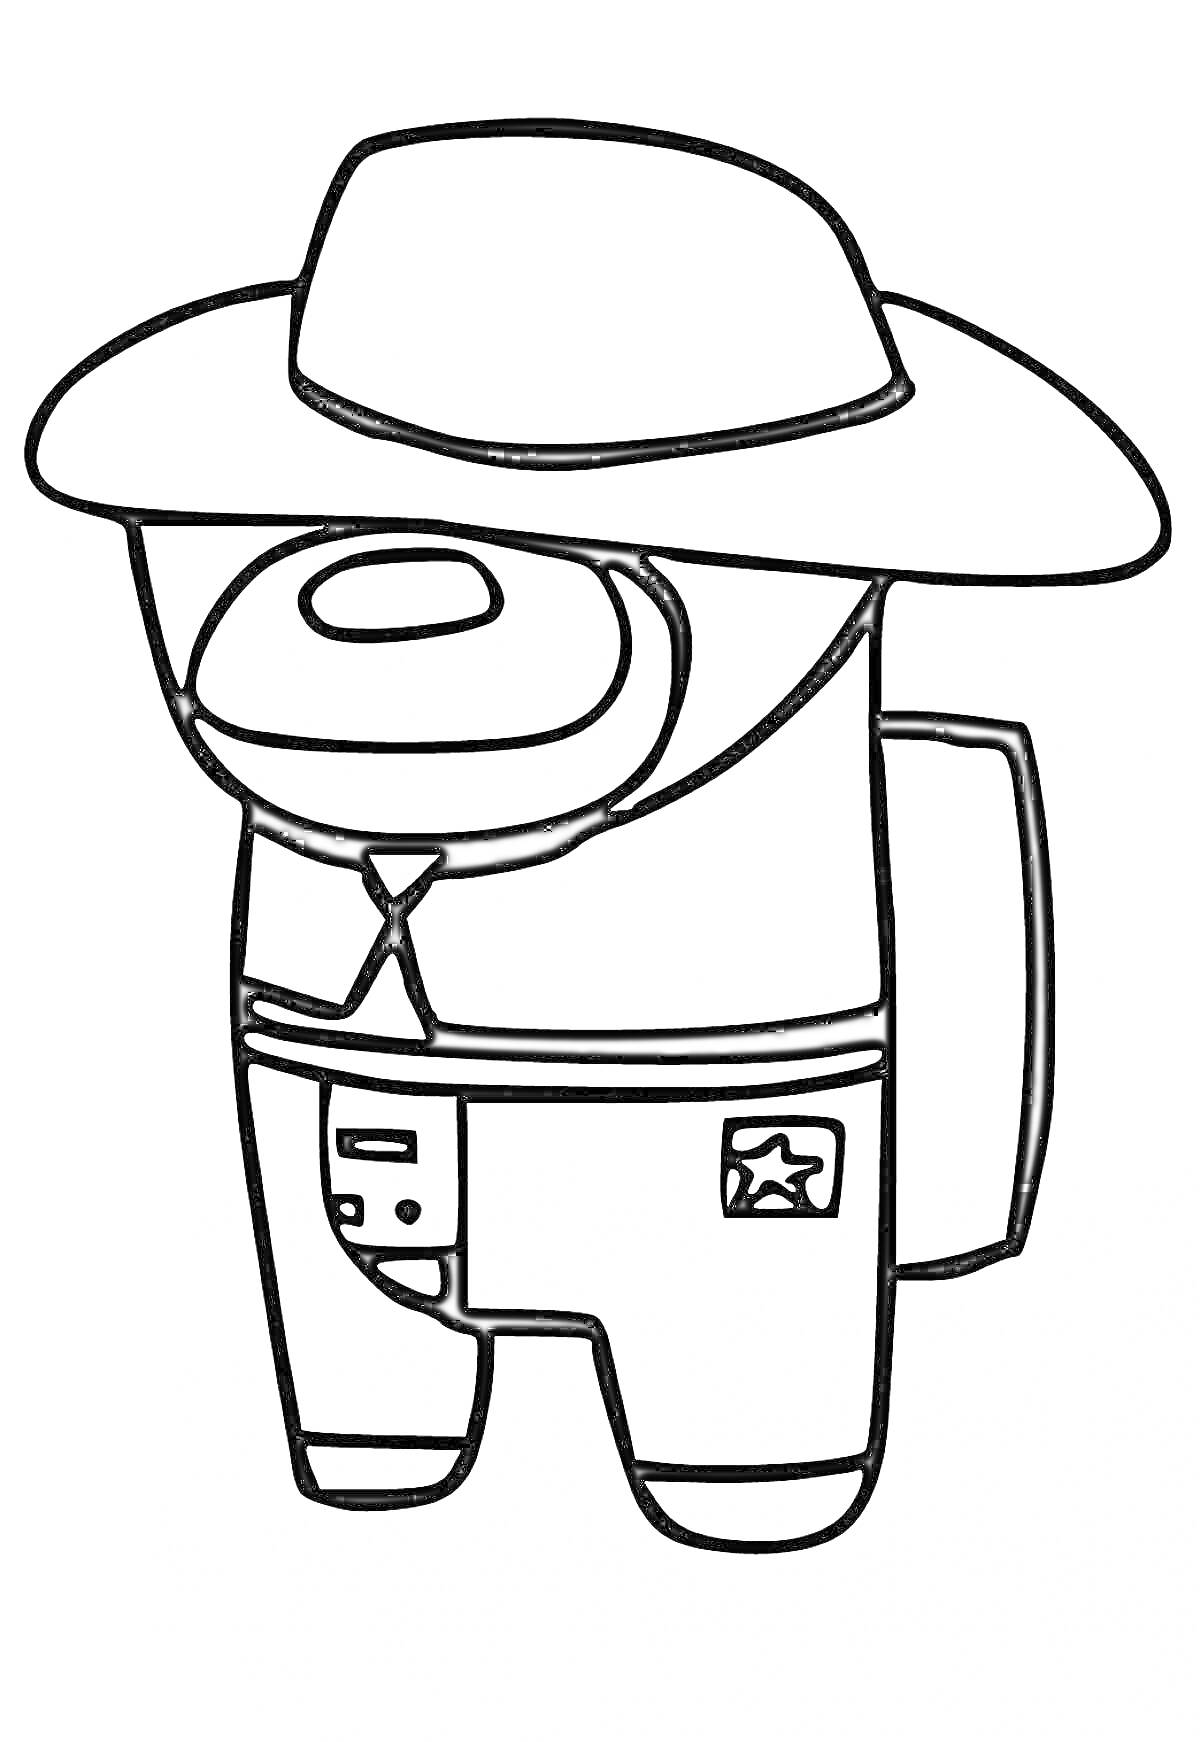 Раскраска Персонаж Амонгас в ковбойском костюме с шляпой и рюкзаком